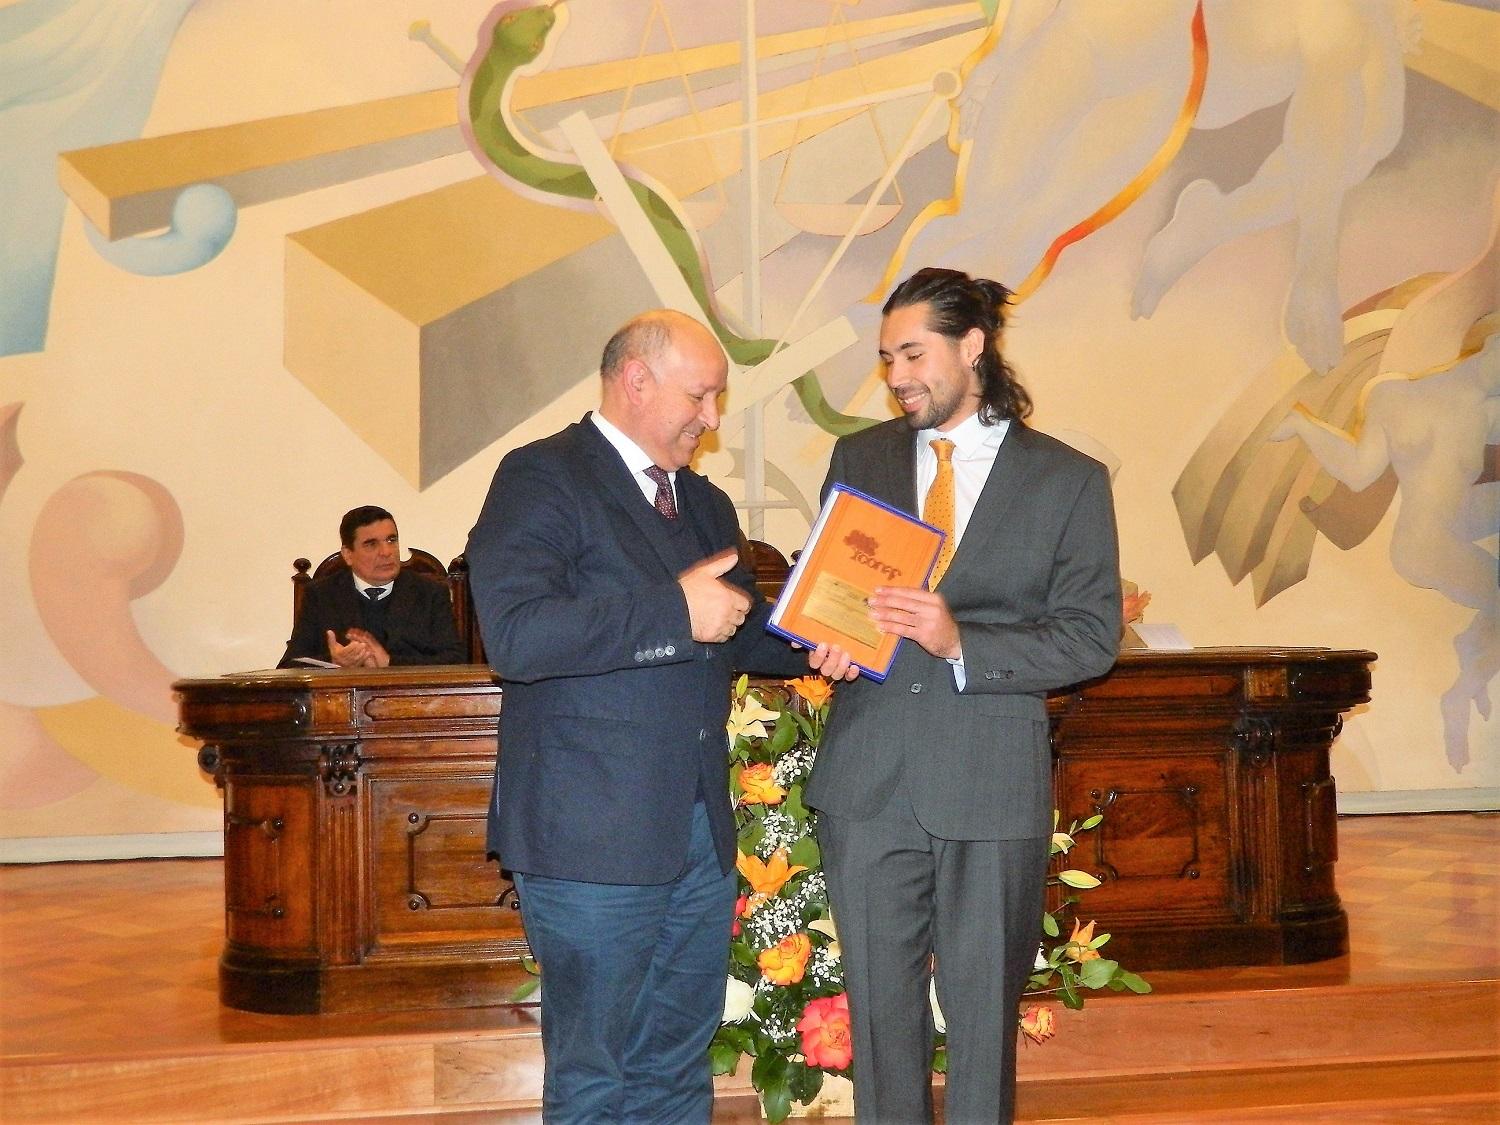 La Corporación Nacional Forestal, otorgó el Premio "Corporación Nacional Forestal" a la Mejor Memoria de Titulo Realizada, durante el año 2018 al estudiante José Ignacio Aravena Clacher.